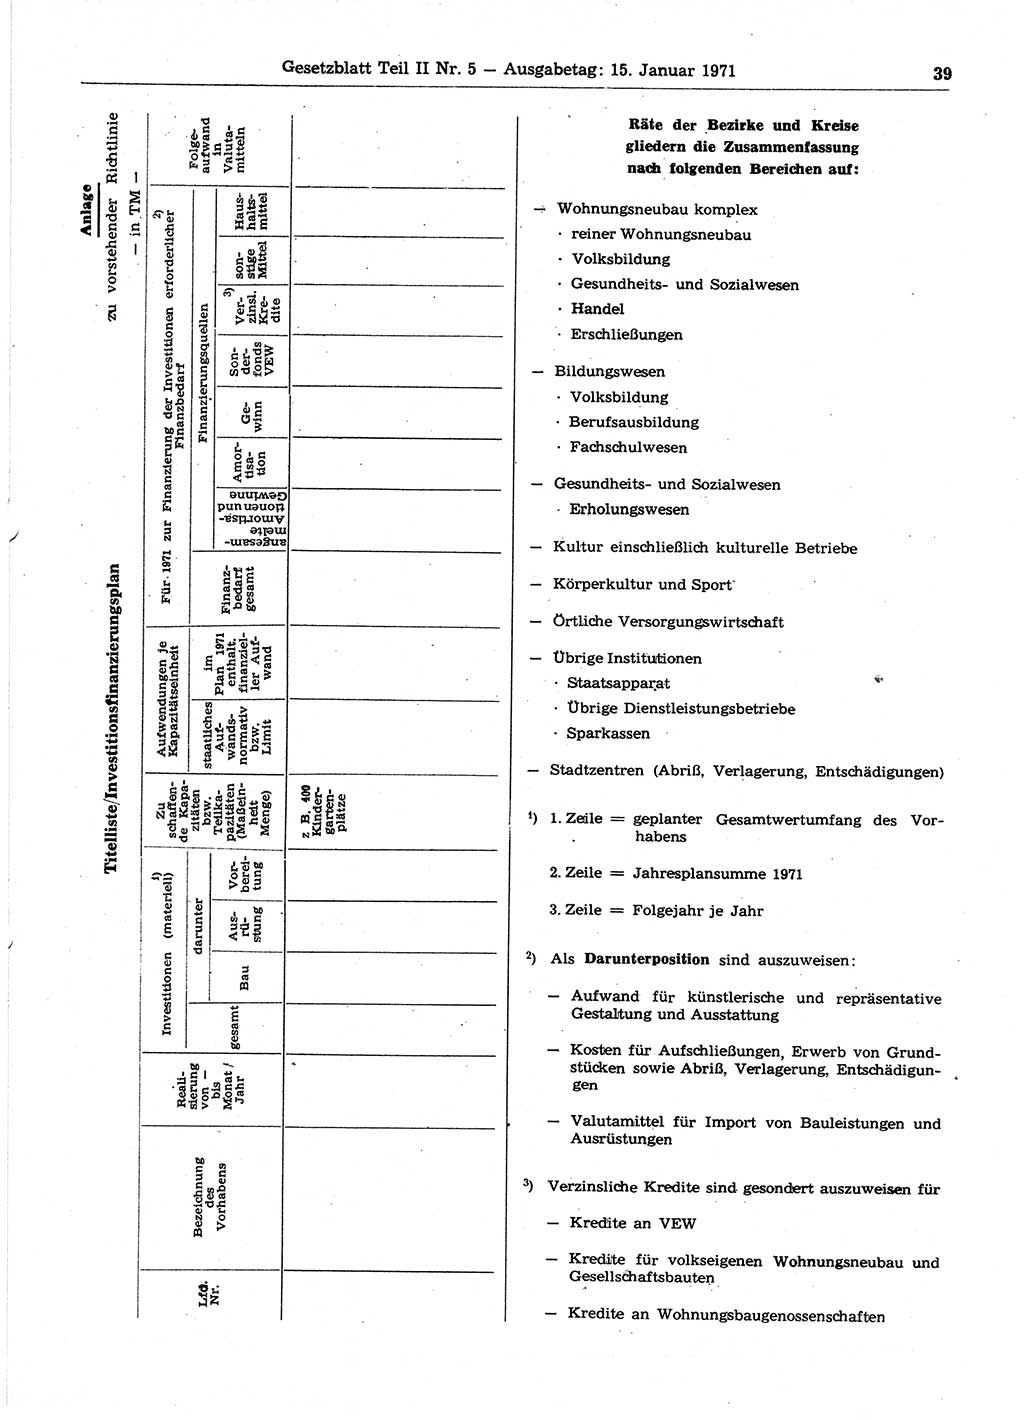 Gesetzblatt (GBl.) der Deutschen Demokratischen Republik (DDR) Teil ⅠⅠ 1971, Seite 39 (GBl. DDR ⅠⅠ 1971, S. 39)